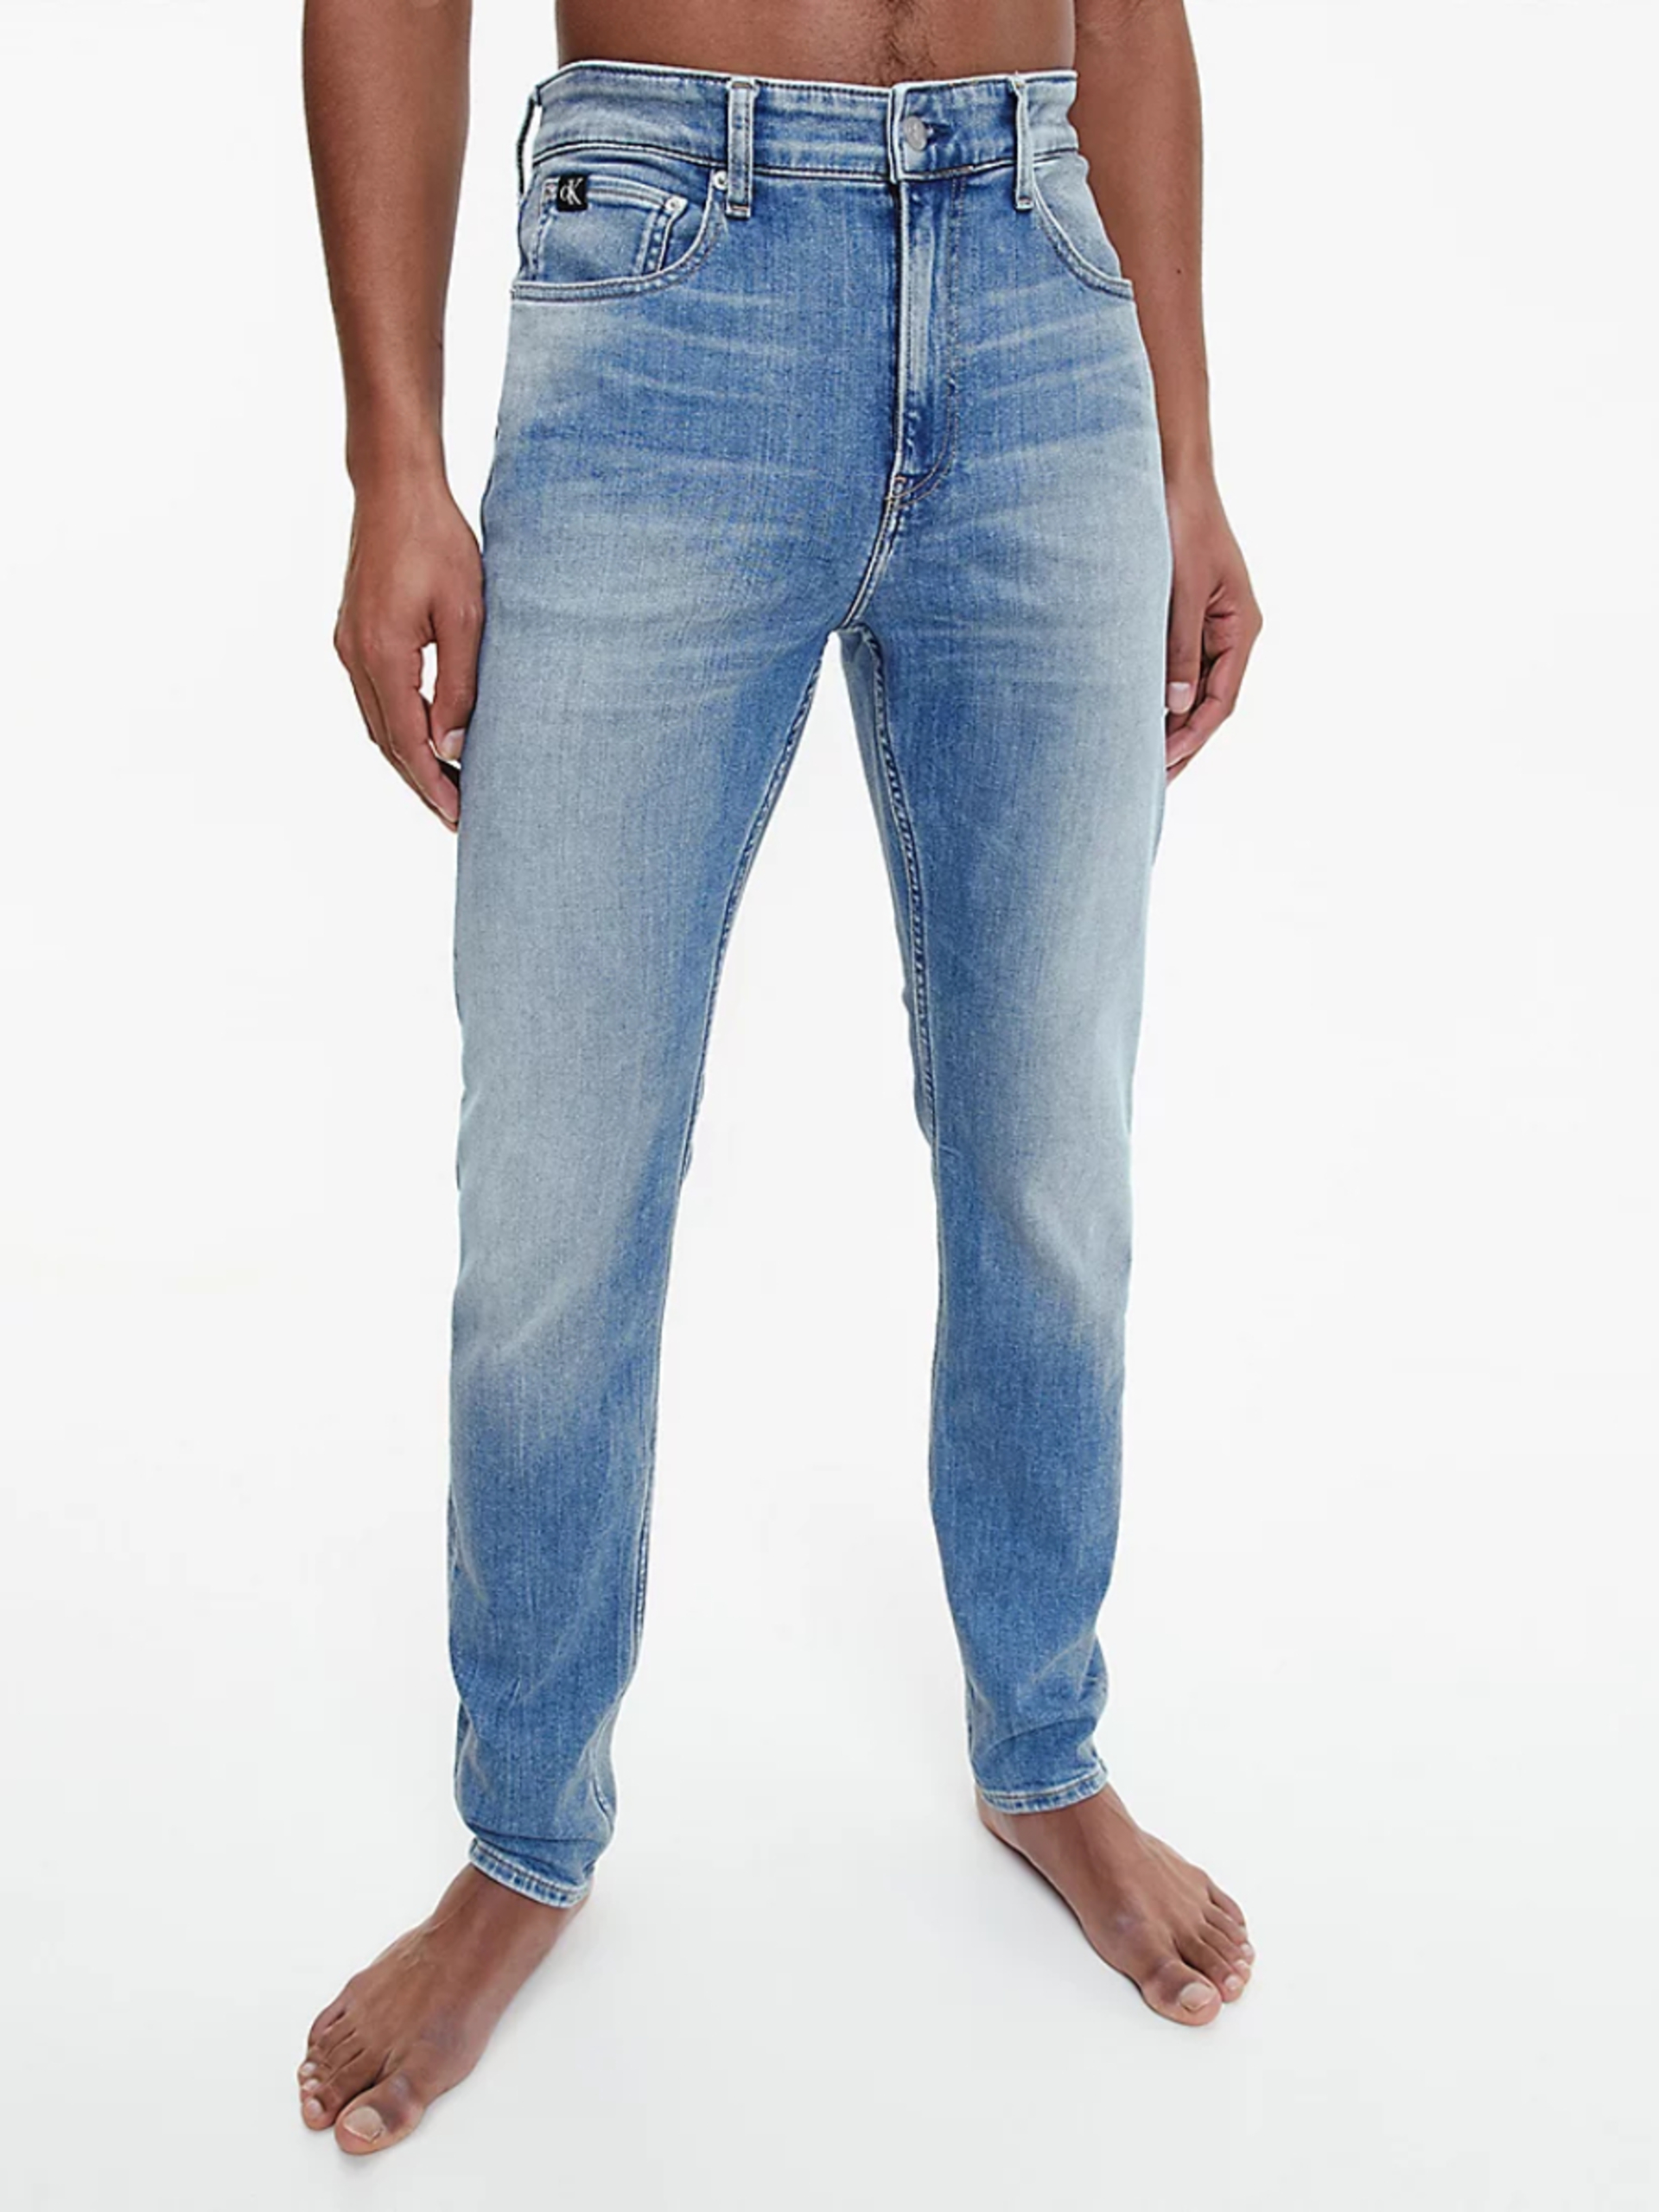 Calvin Klein pánské modré džíny - 30/30 (1A4)